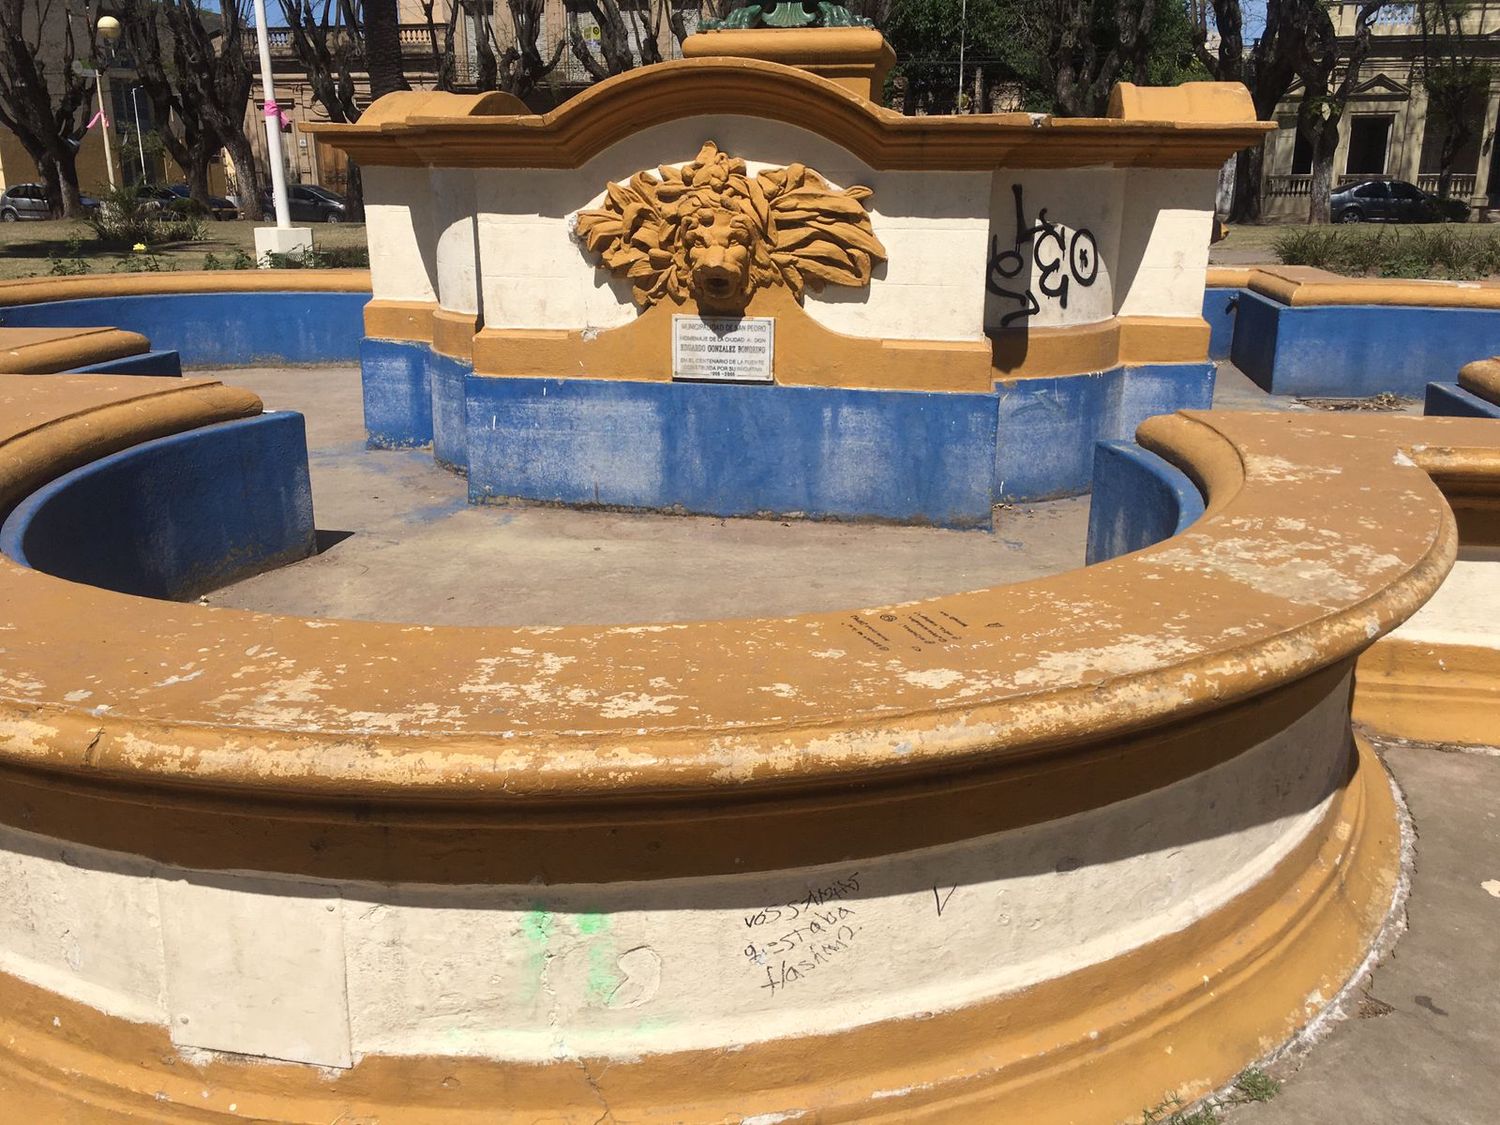 Tras una iniciativa ciudadana para restaurar la fuente de la plaza, Guacone recordó cuando lo hizo en los 2000